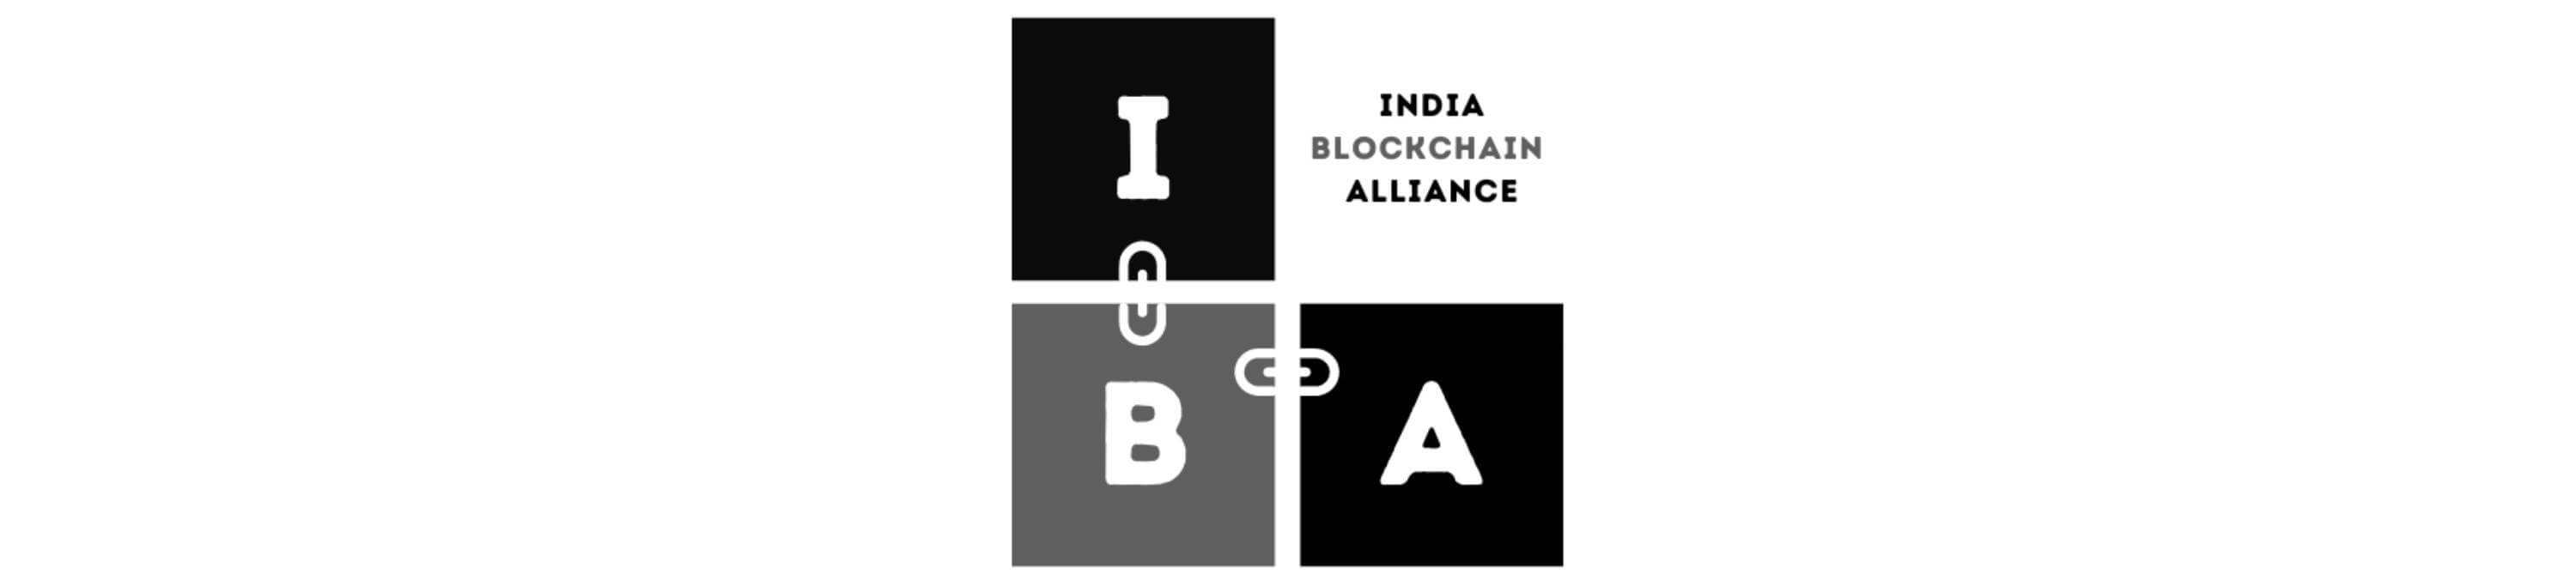 India Blockchain Alliance